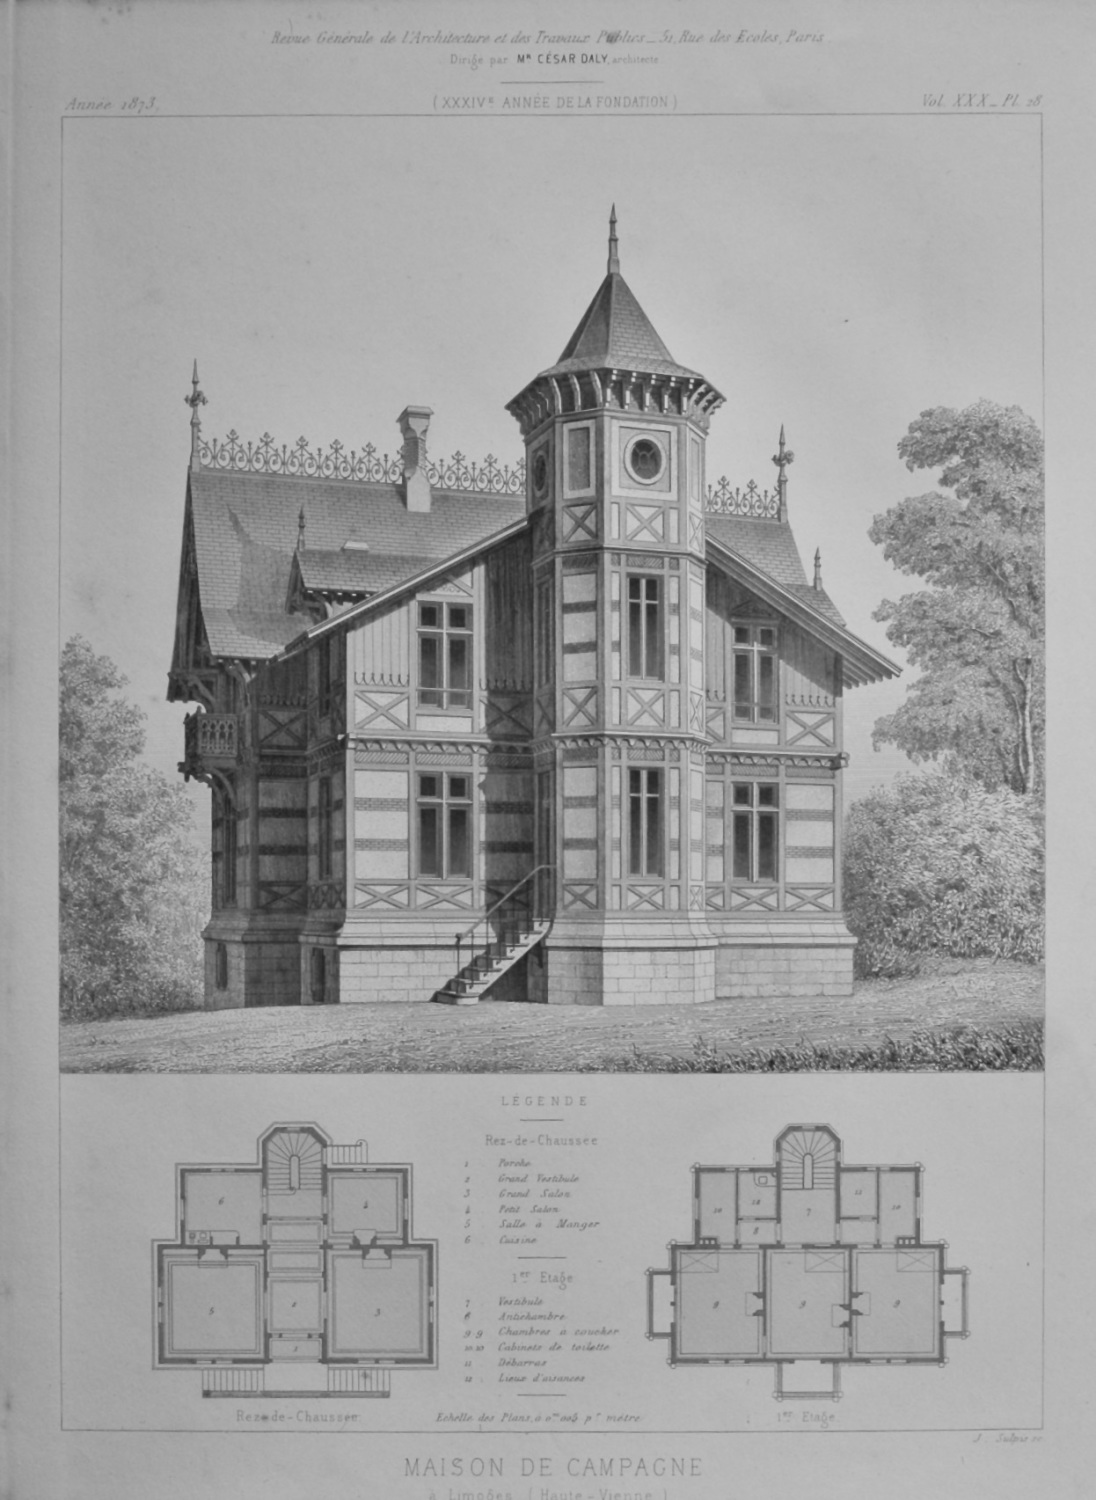 Maison De Campagne, a Limoges (Haute - Vienne).  1873.